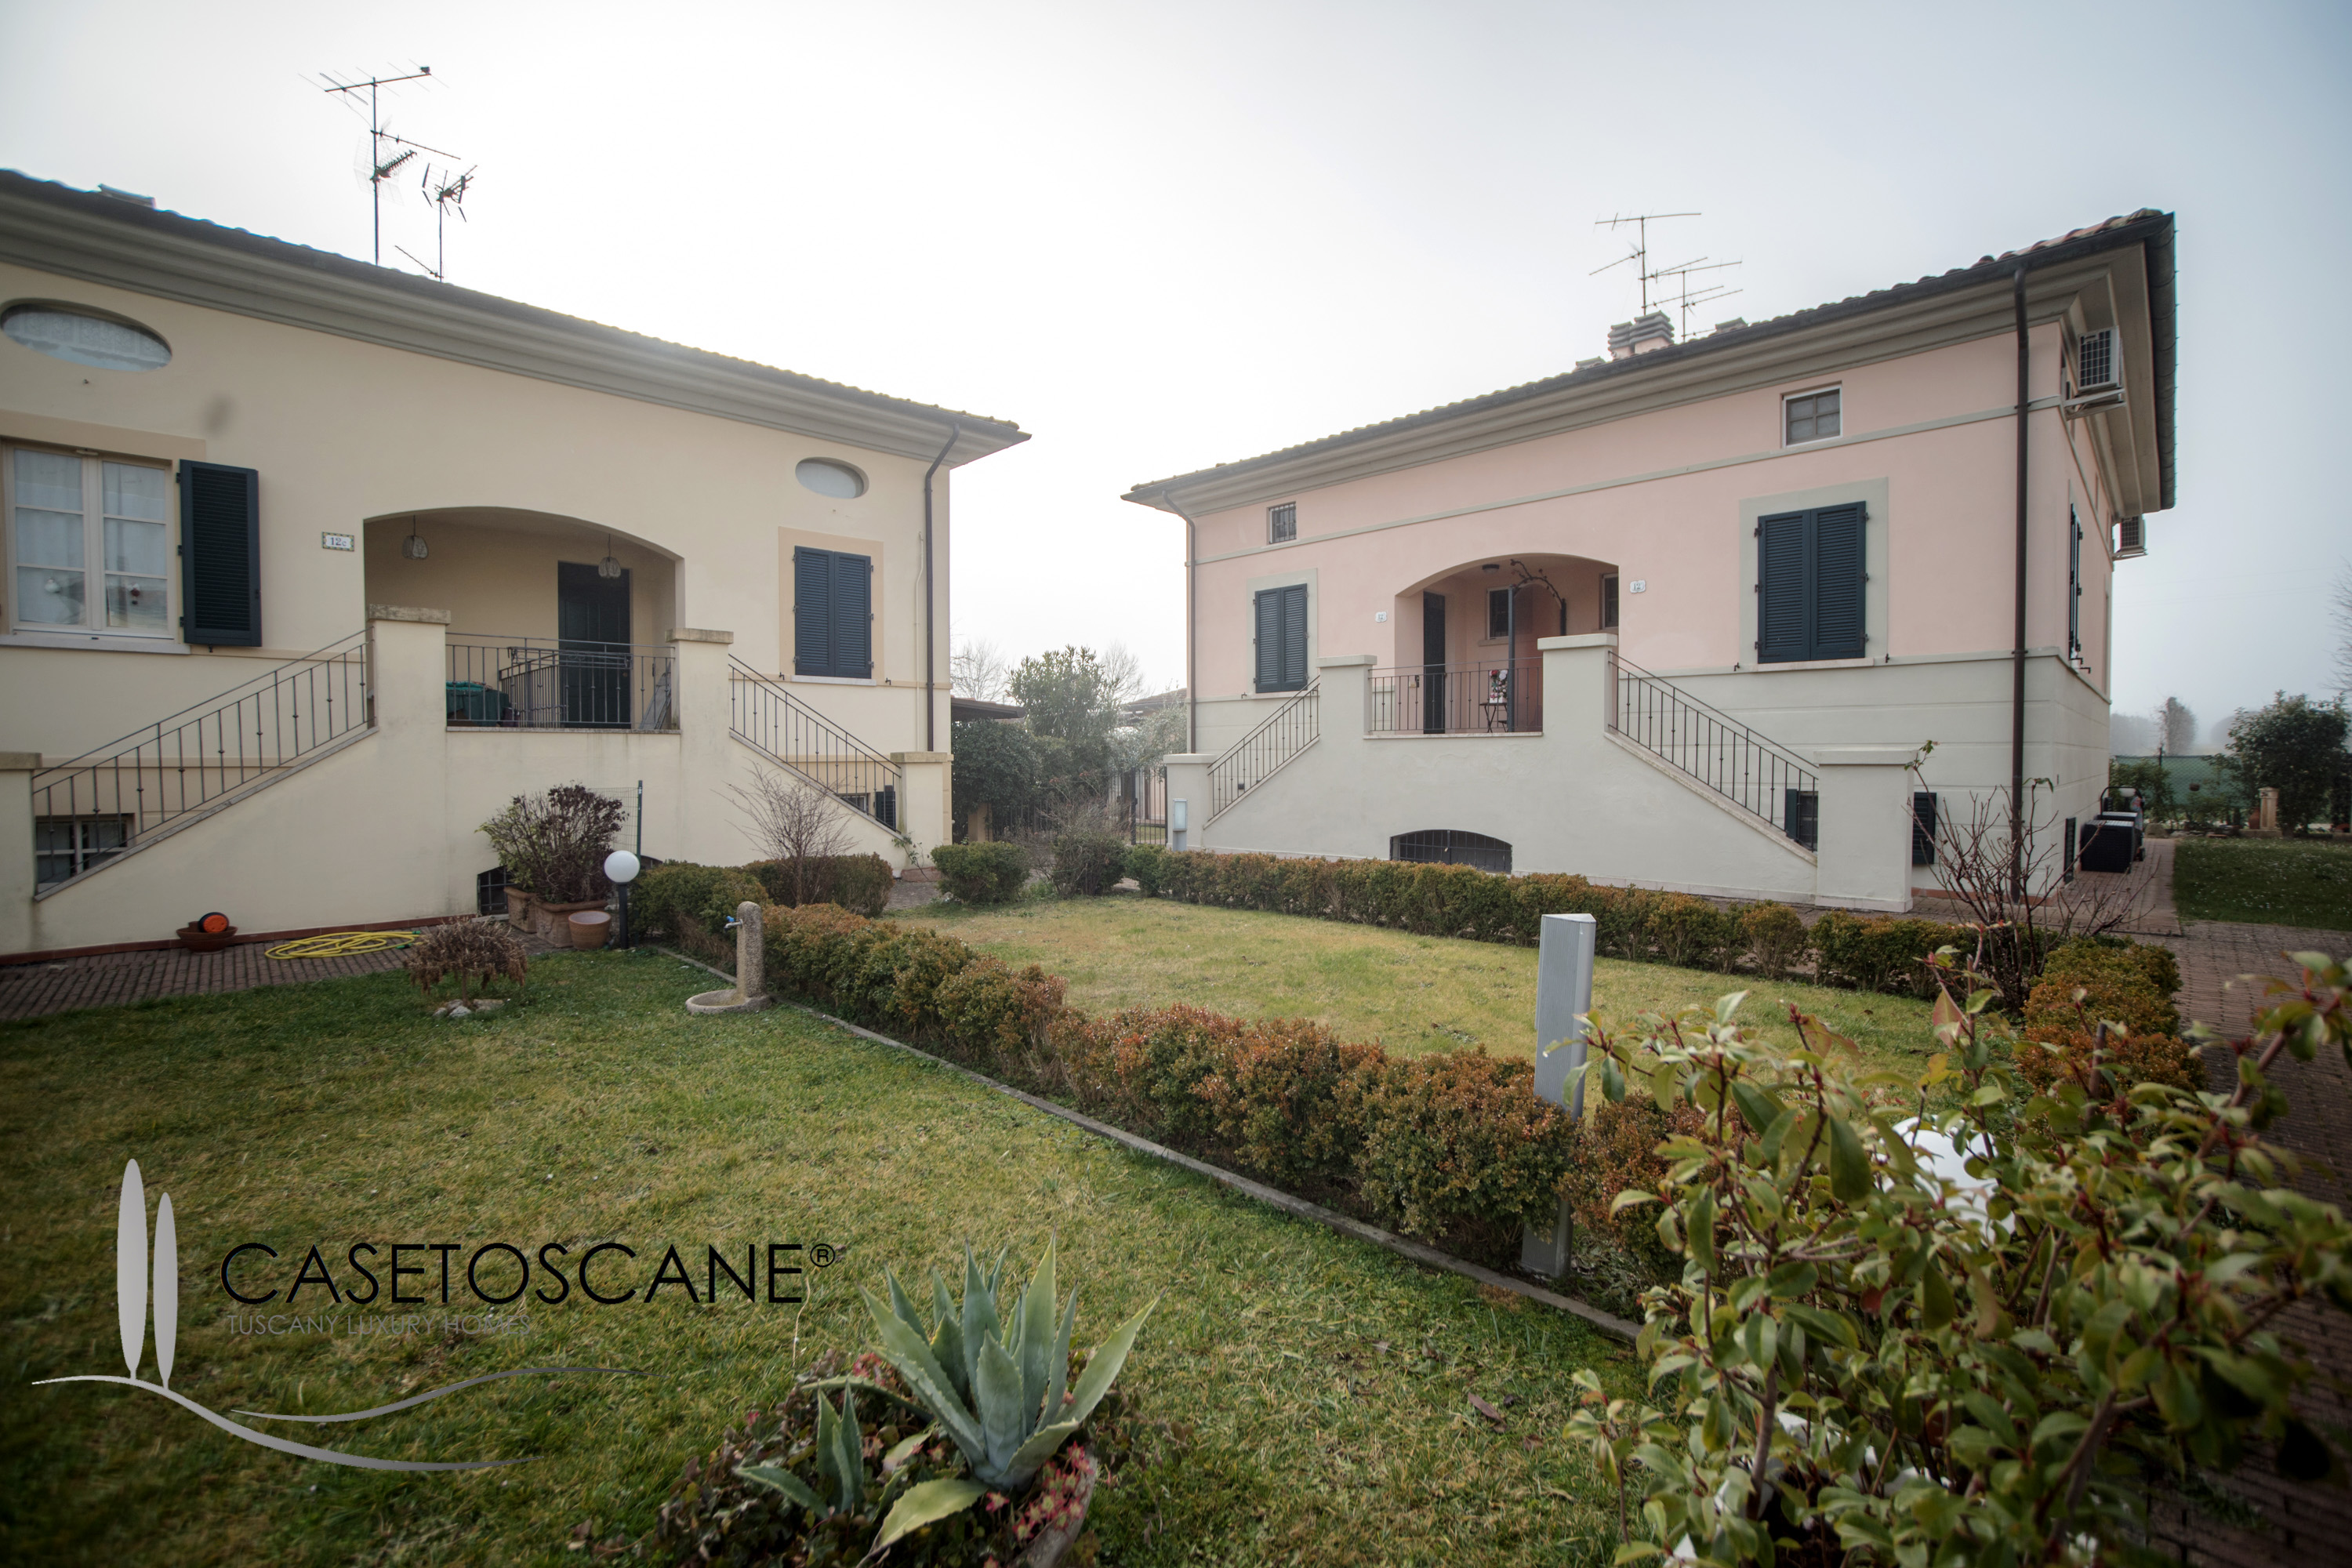 3091 - Porzione di villetta bifamiliare, recente costruzione, mq.180 con garage e giardino di mq.200 a Pieve al Toppo, a 10' da Arezzo.